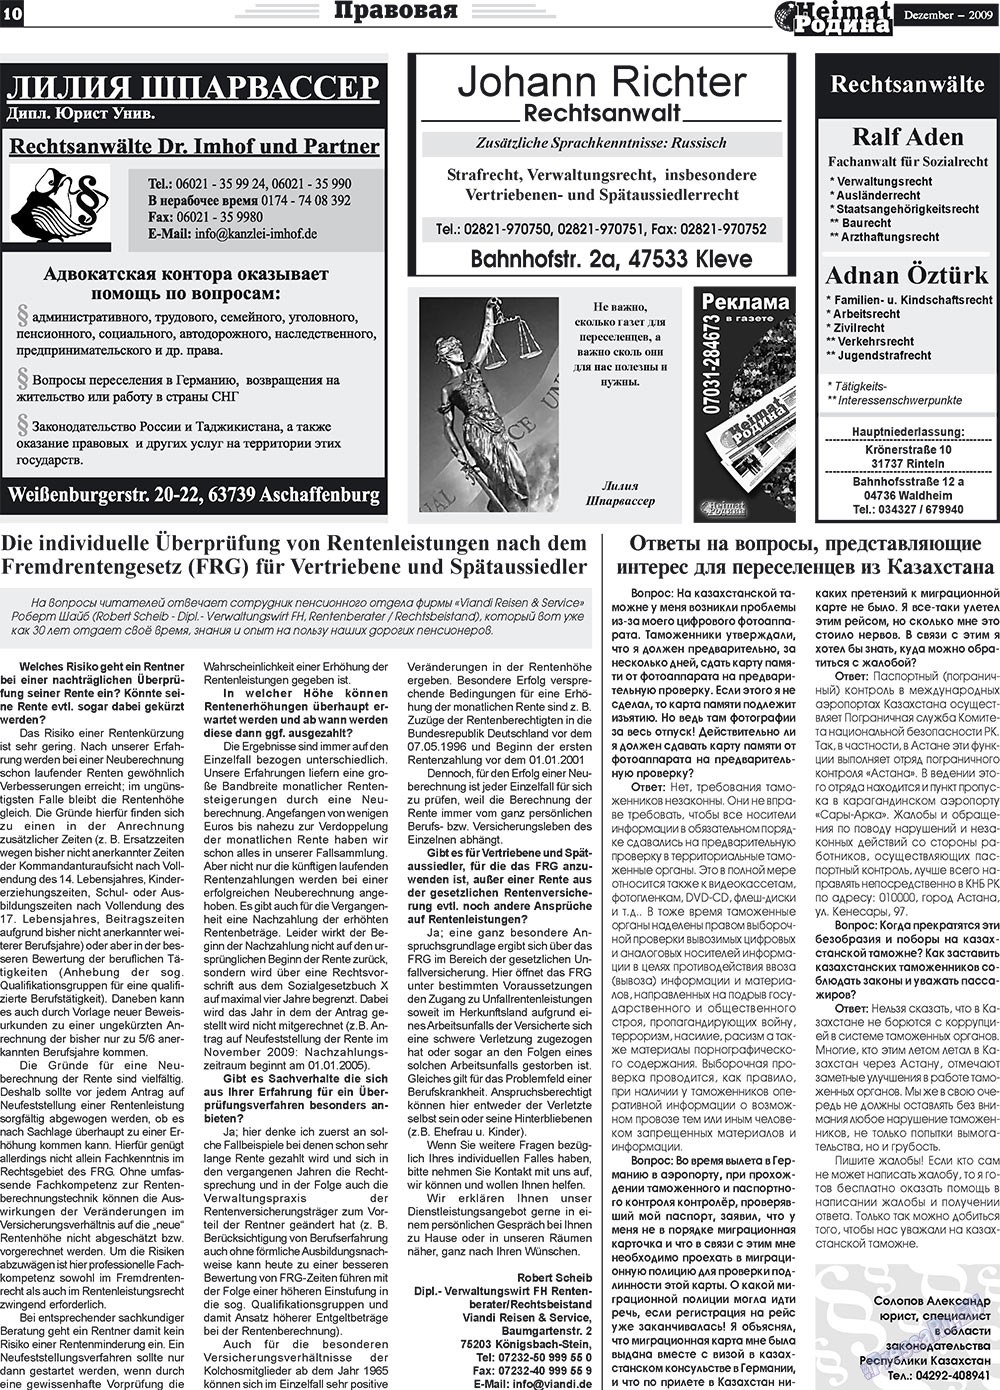 Heimat-Родина (газета). 2009 год, номер 12, стр. 10